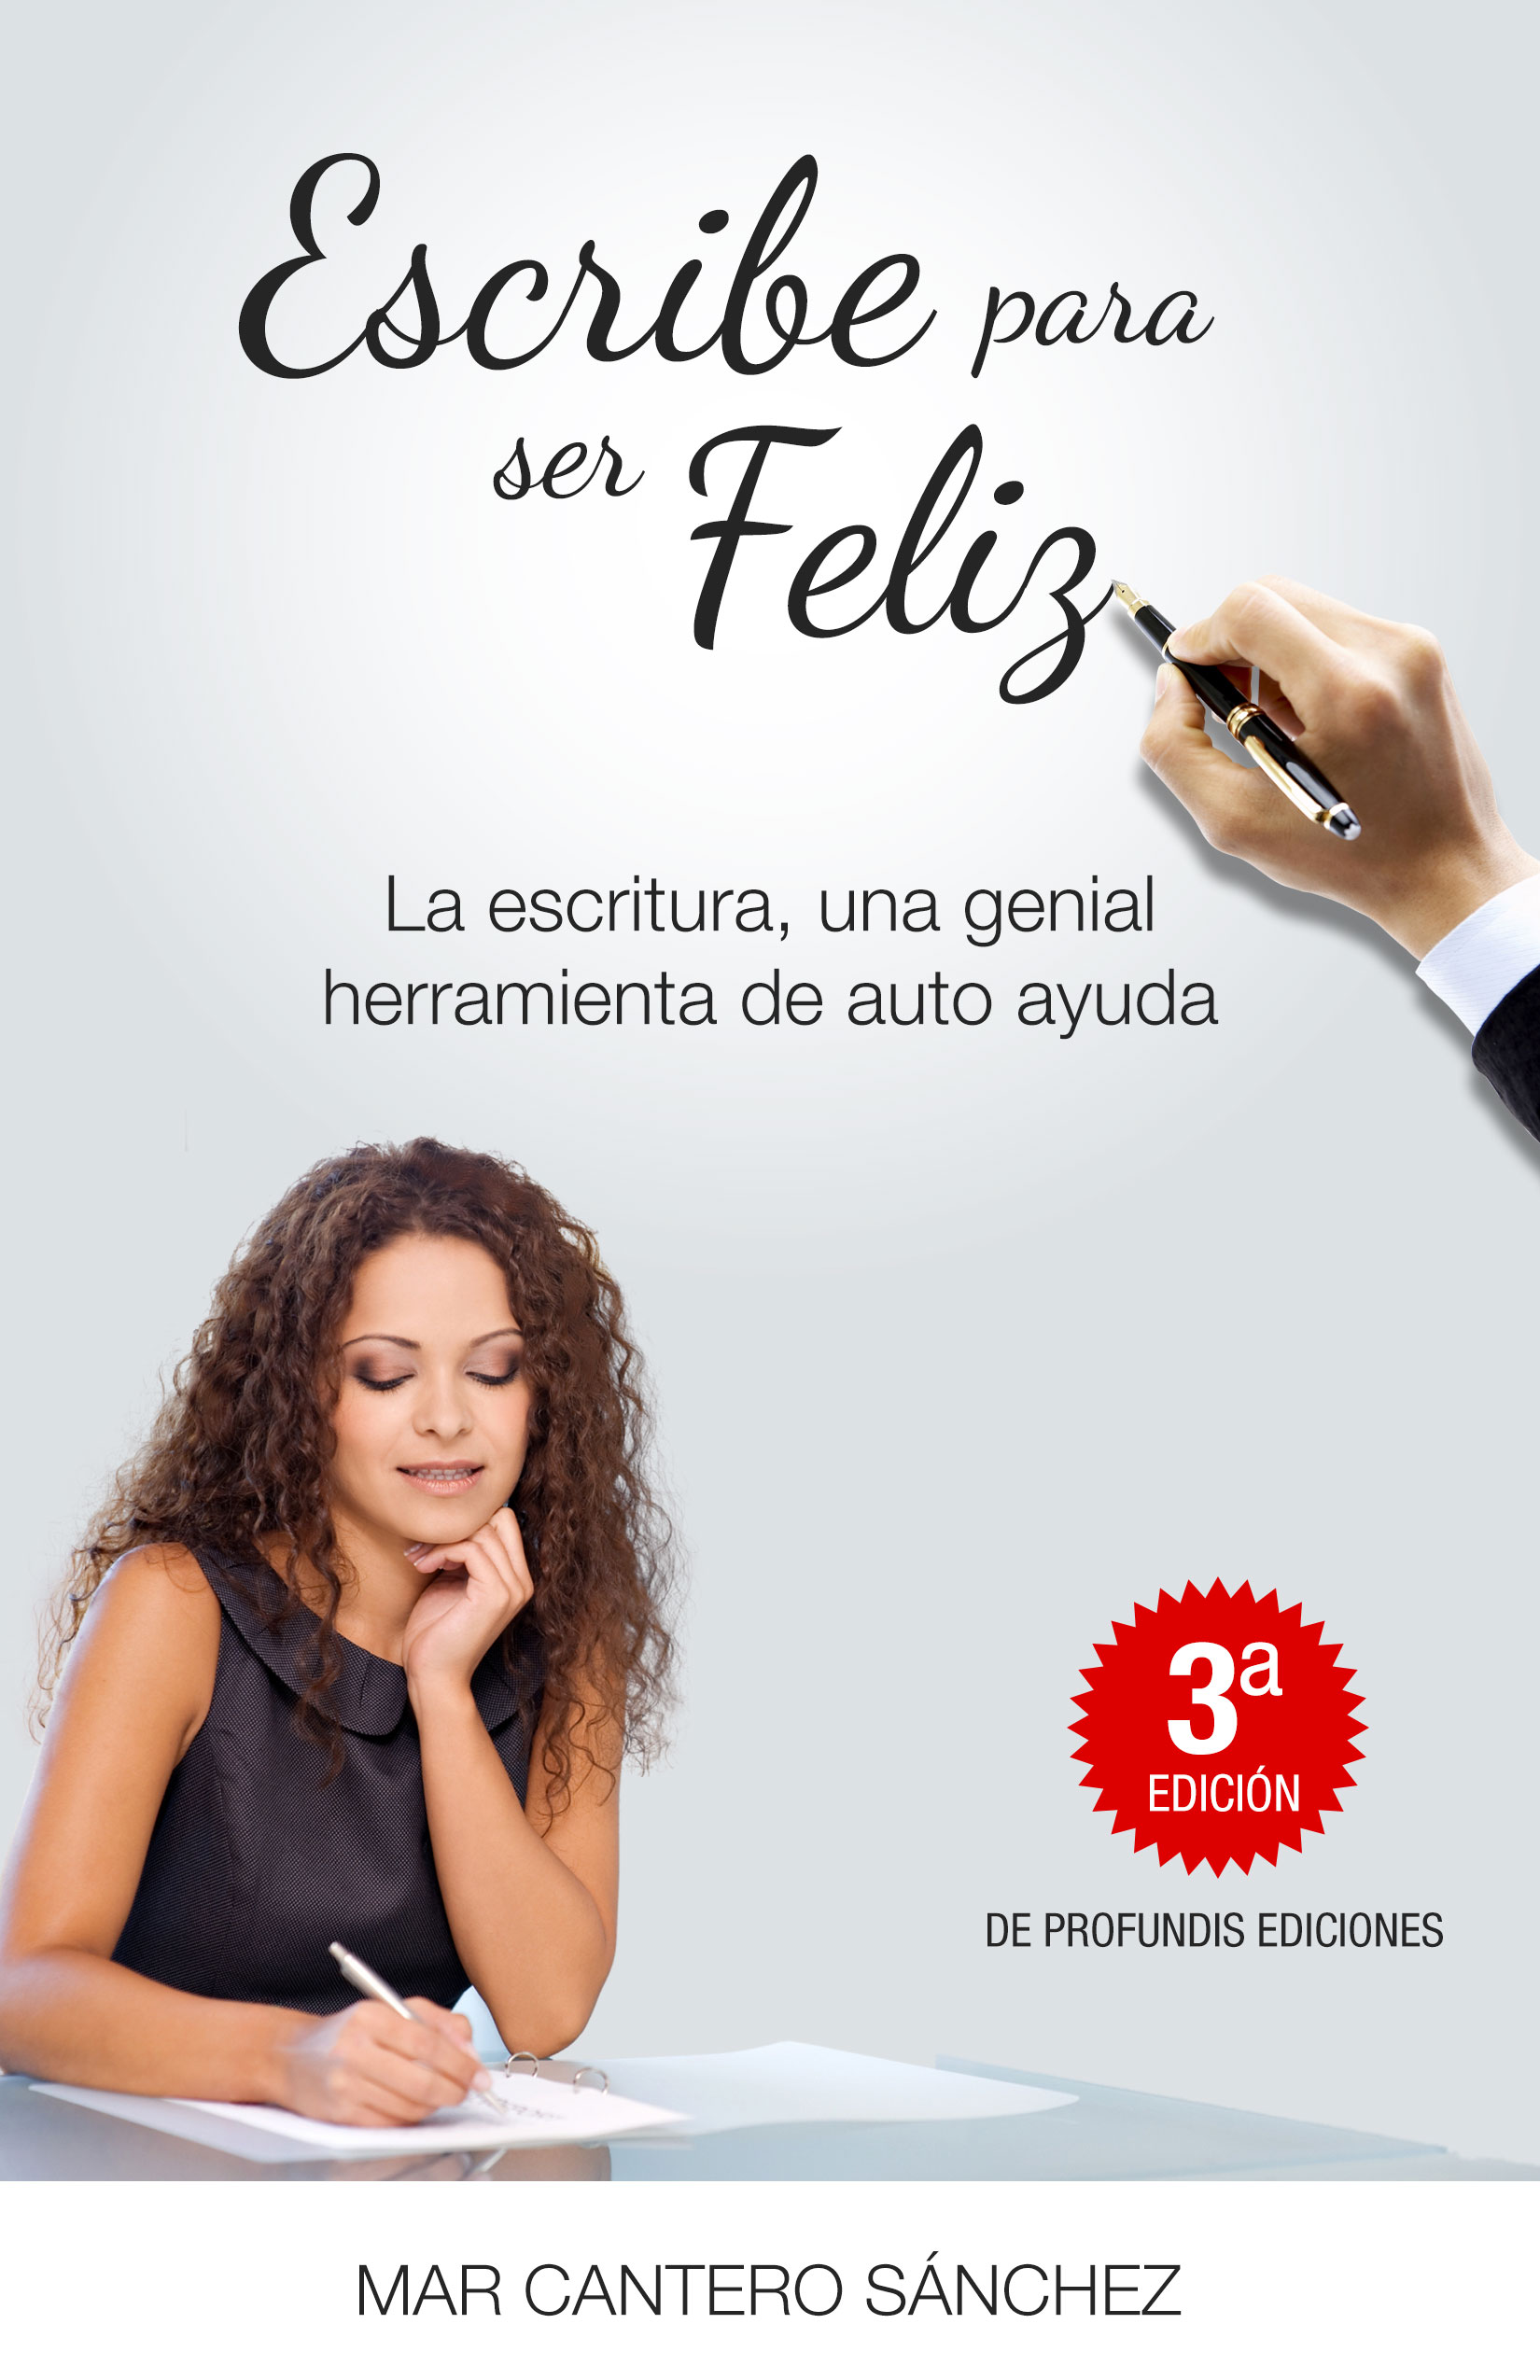 Escribe para ser feliz, 3º edición, portada, Mar Cantero Sánchez, www.marcanterosanchez.com